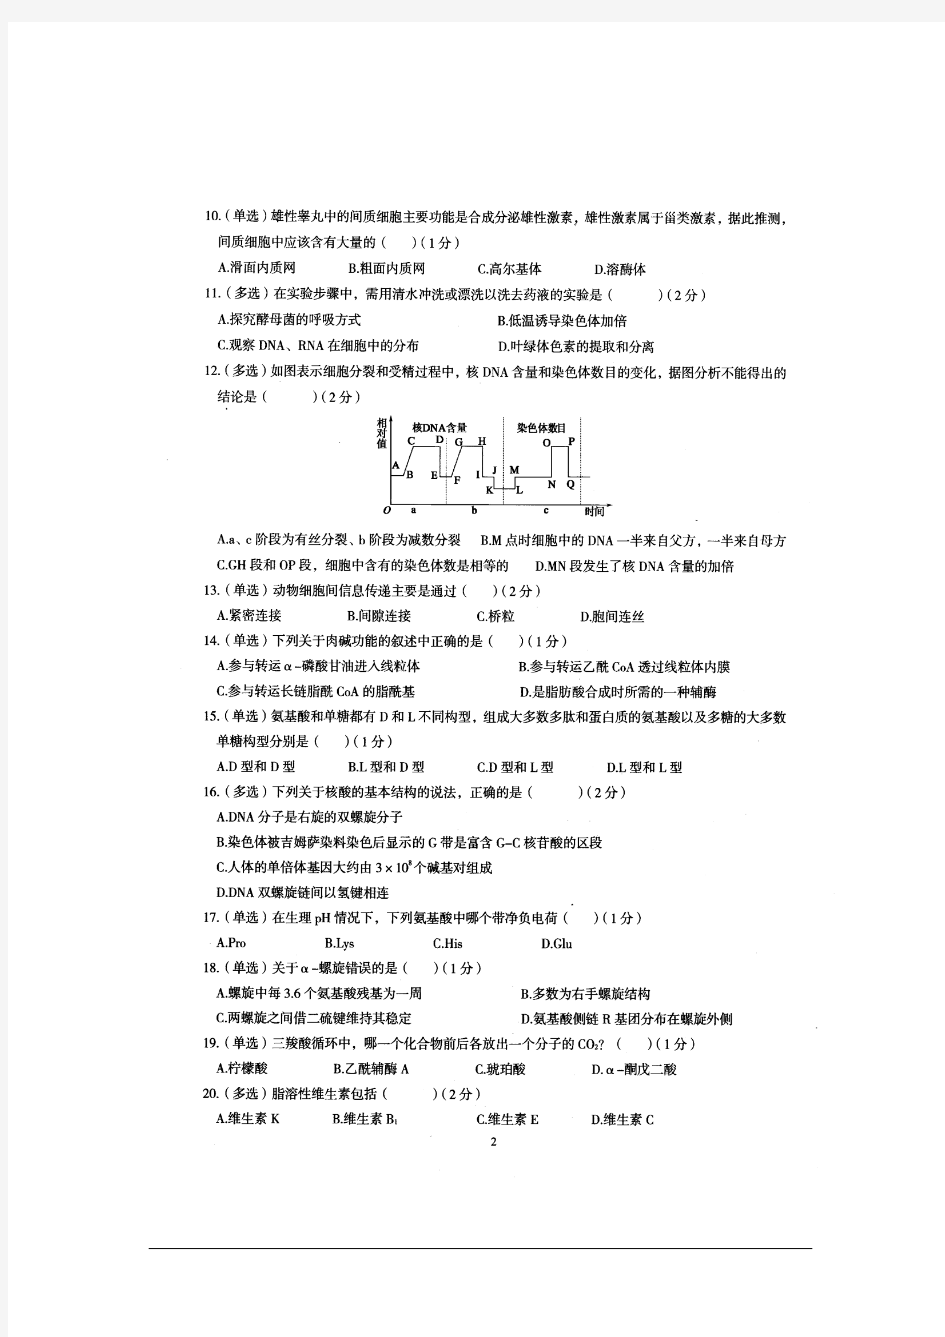 2015年辽宁省中学生生物学初赛试卷及答案(扫描版)